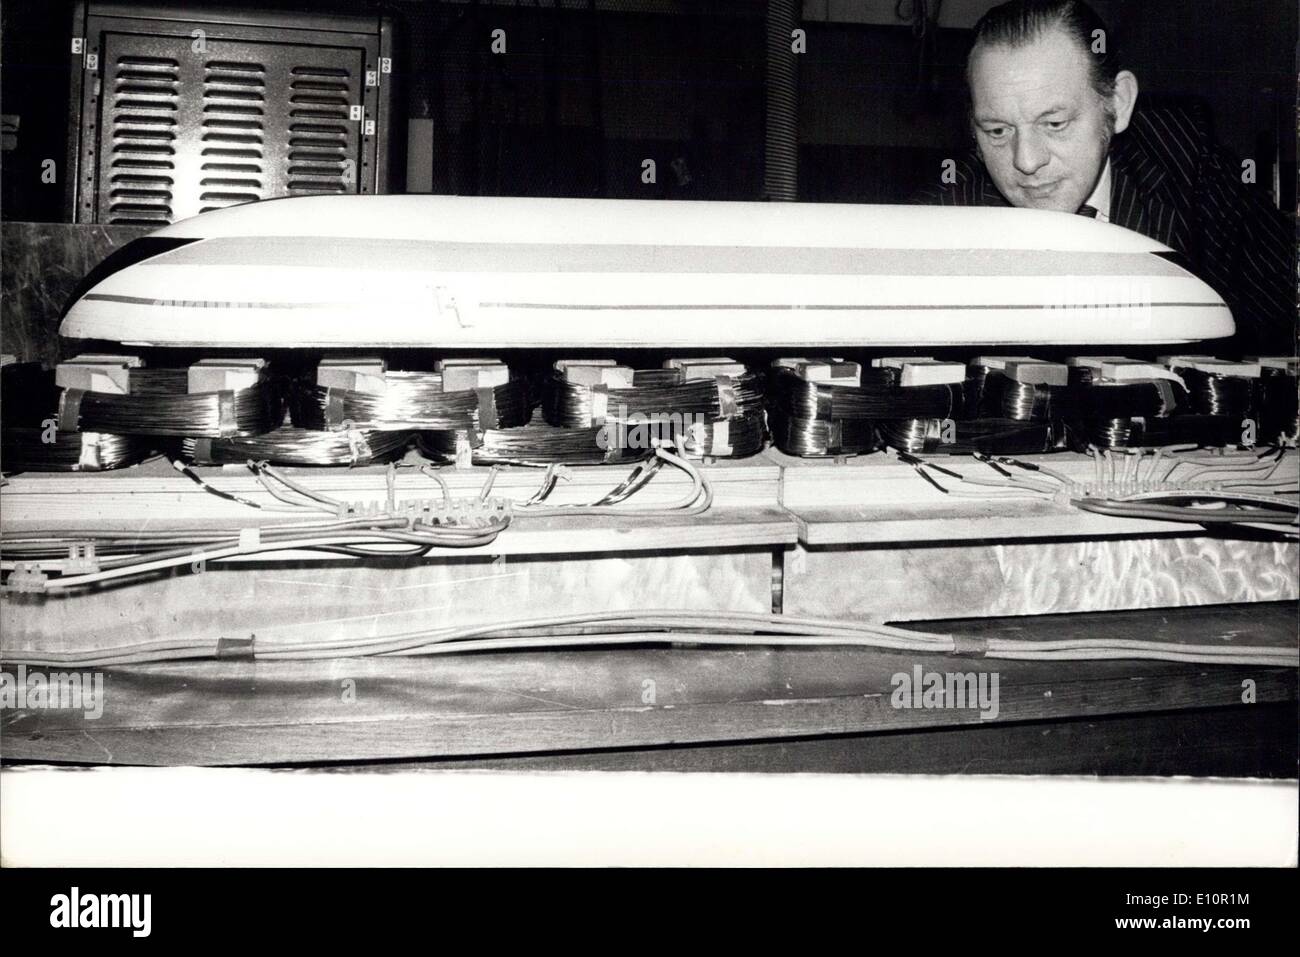 7. Dezember 1973 - Modell der neuen Linearmotor Testfahrzeugen. Prof. Eric Lai Thwaite, der Linearmotoren für die neuen aufgelösten Luftkissenschwebebahn - entwickelt eine vollständige Version von einen neuen Höchststand bauen will beschleunigen verfolgt Hovercraft Ltd., die von der Regierung geschlossen wurde. Die neue Maschine, an dem seine Gruppe arbeitete, wurde als "magnetische Flüsse '' bezeichnet. Es könnte Prepulsion und Federung für Hochgeschwindigkeitszüge auf eine Einheit bieten. Stockfoto